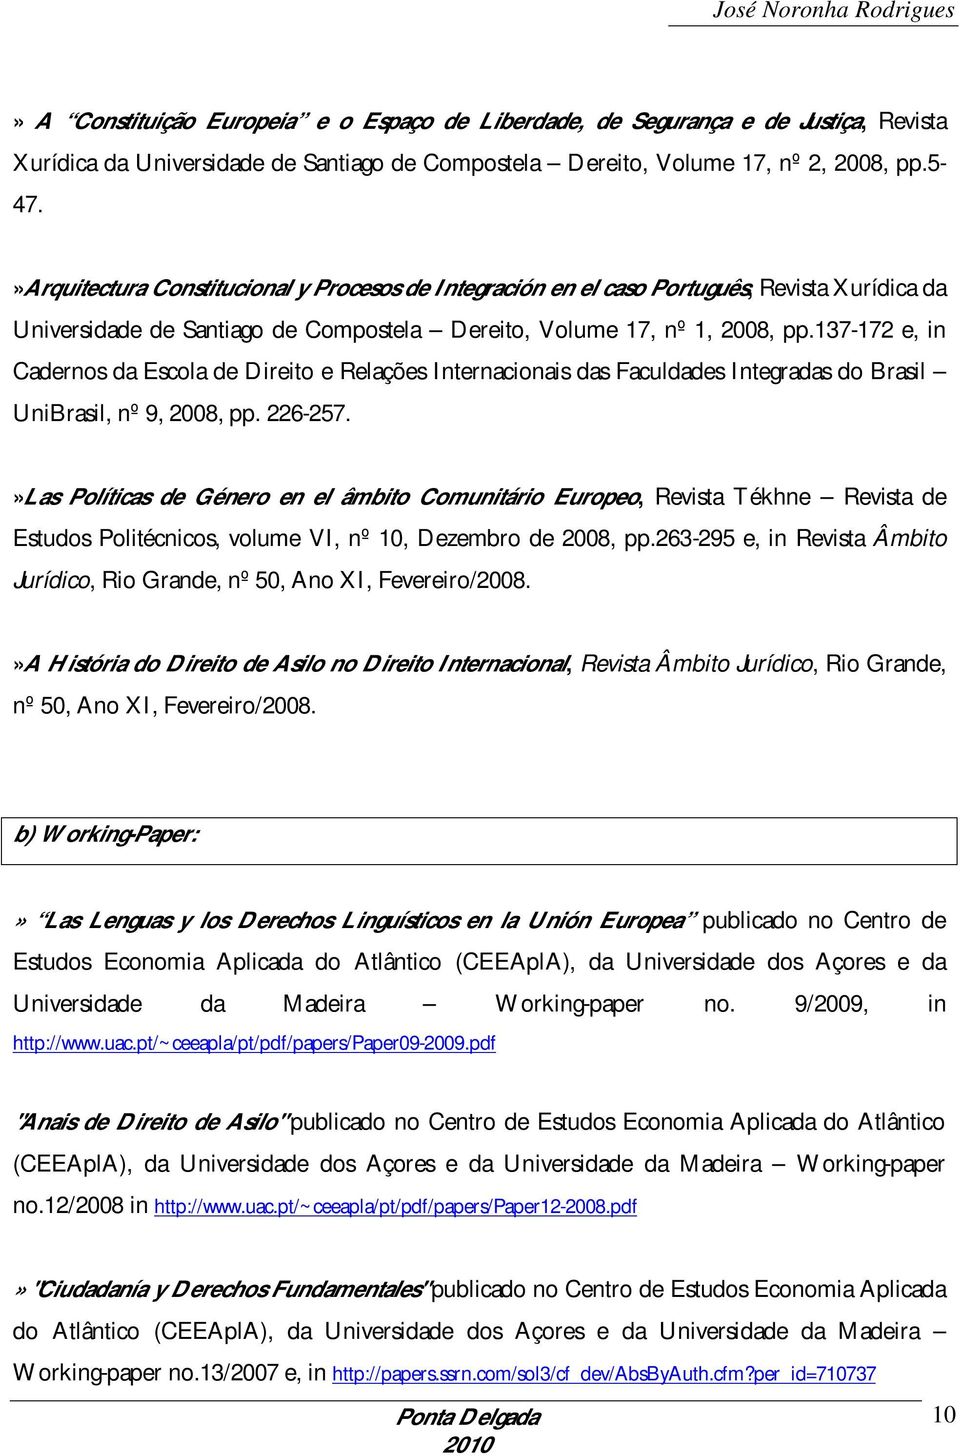 137-172 e, in Cadernos da Escola de Direito e Relações Internacionais das Faculdades Integradas do Brasil UniBrasil, nº 9, 2008, pp. 226-257.